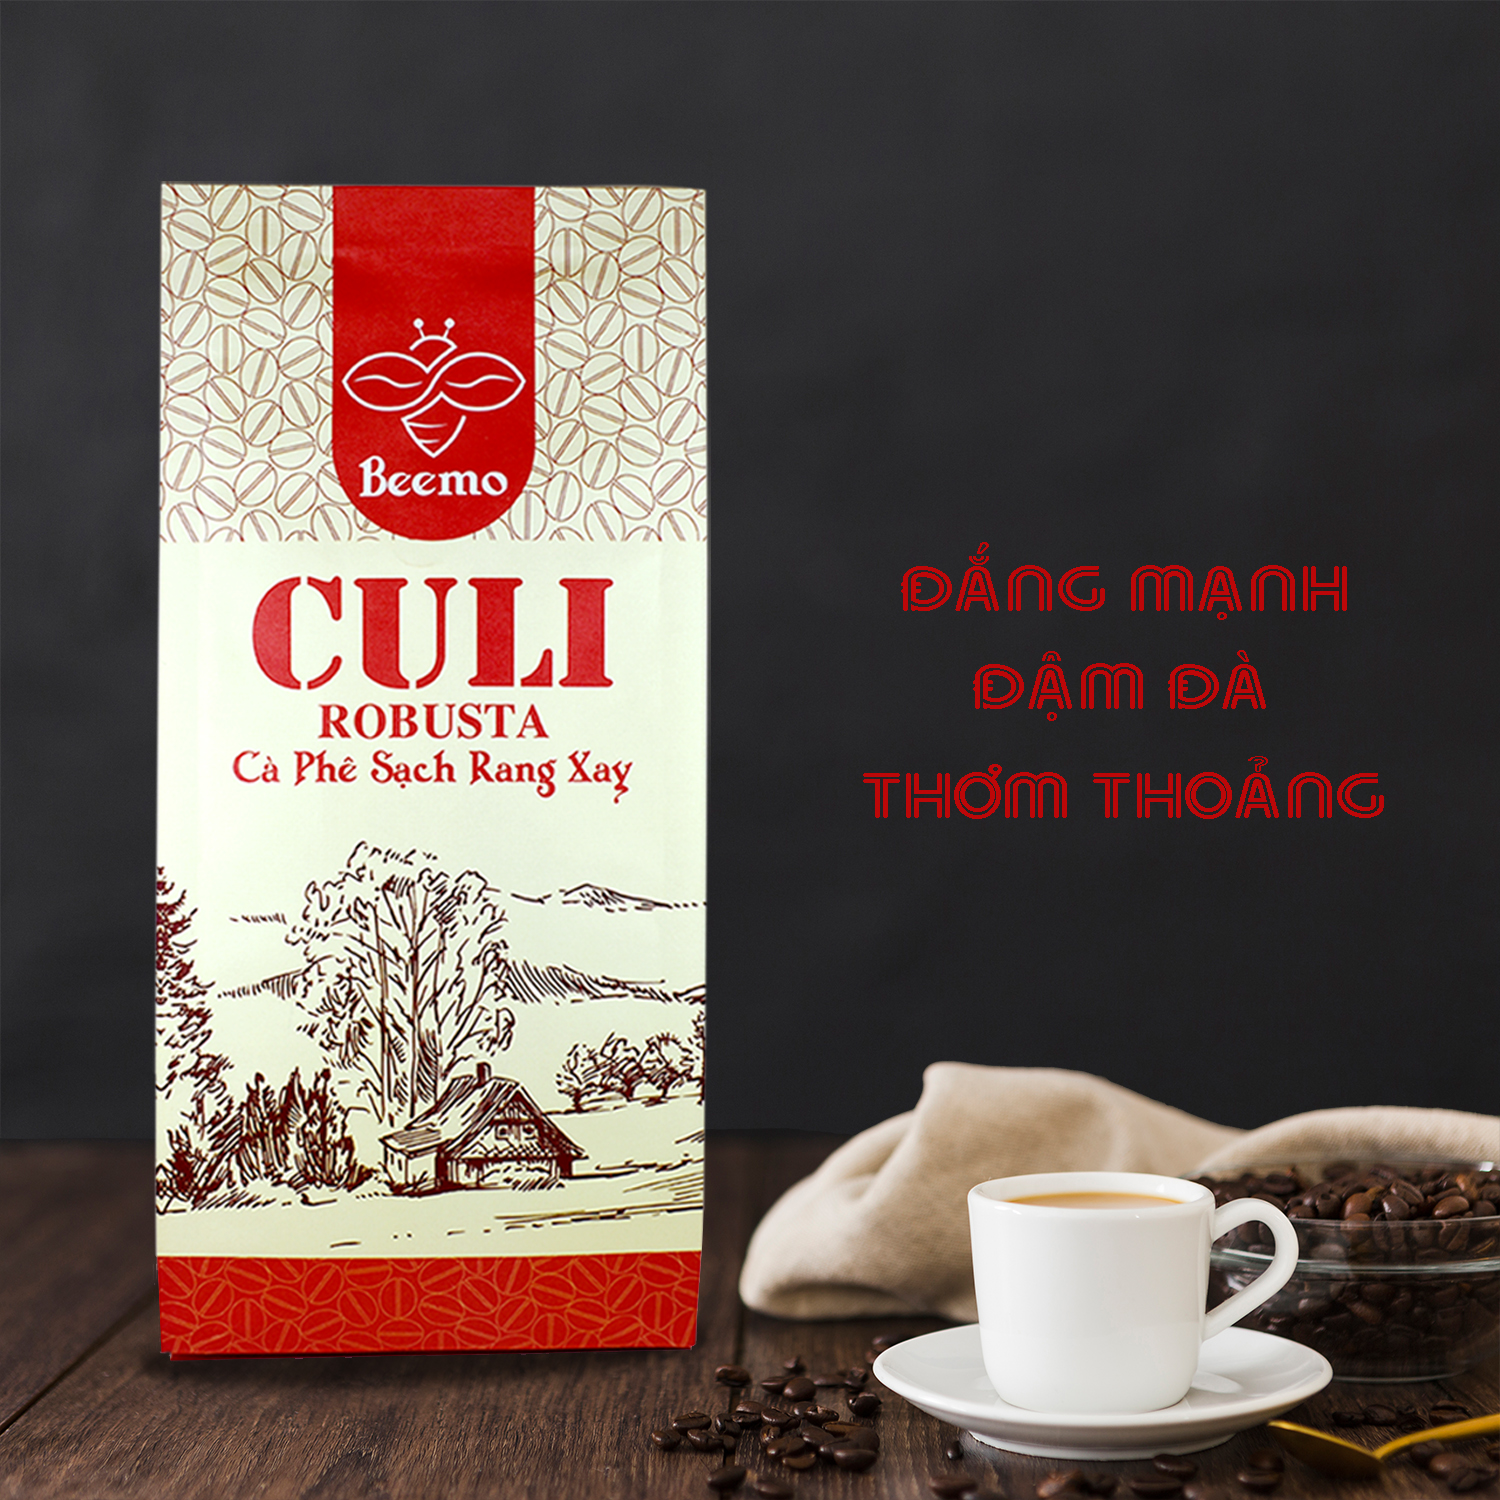 Cà phê nguyên chất Culi Robusta, cafe mộc rang xay Beemo 500g - đắng mạnh, đậm đà, thơm thoảng